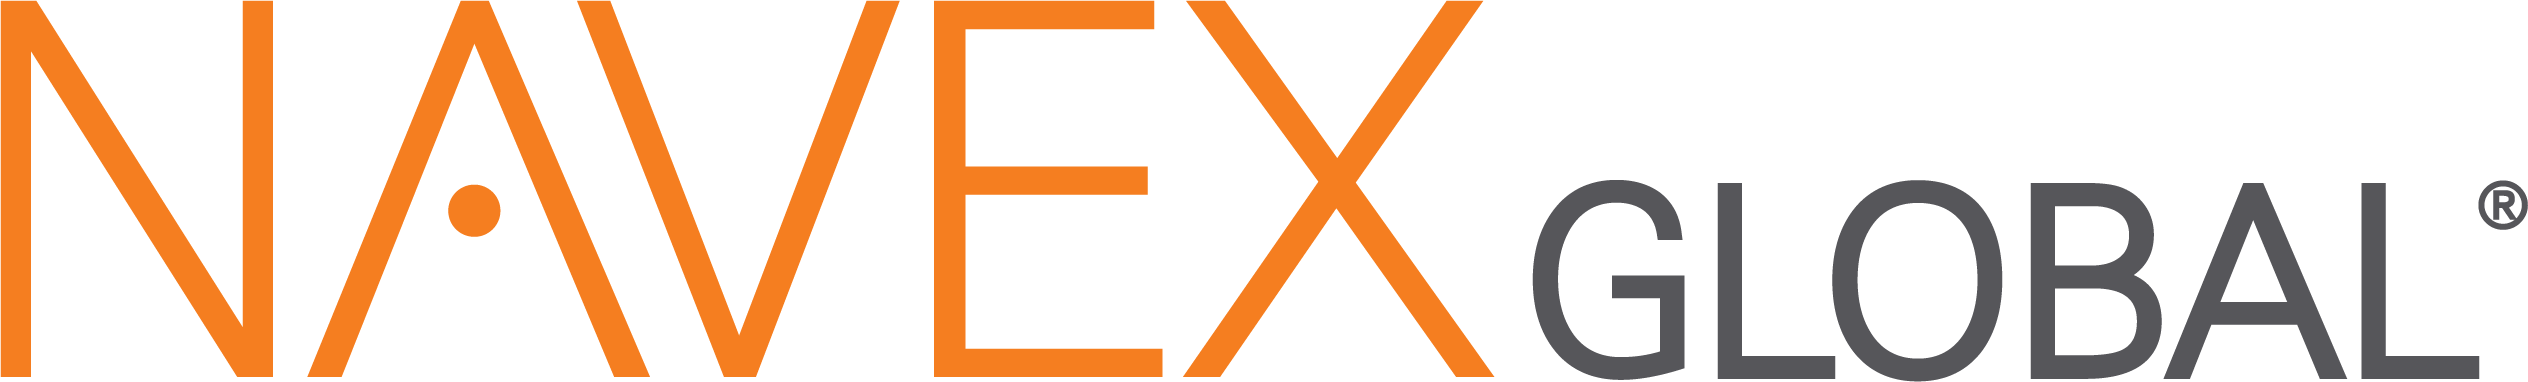 NAVEX-logo-2019.png